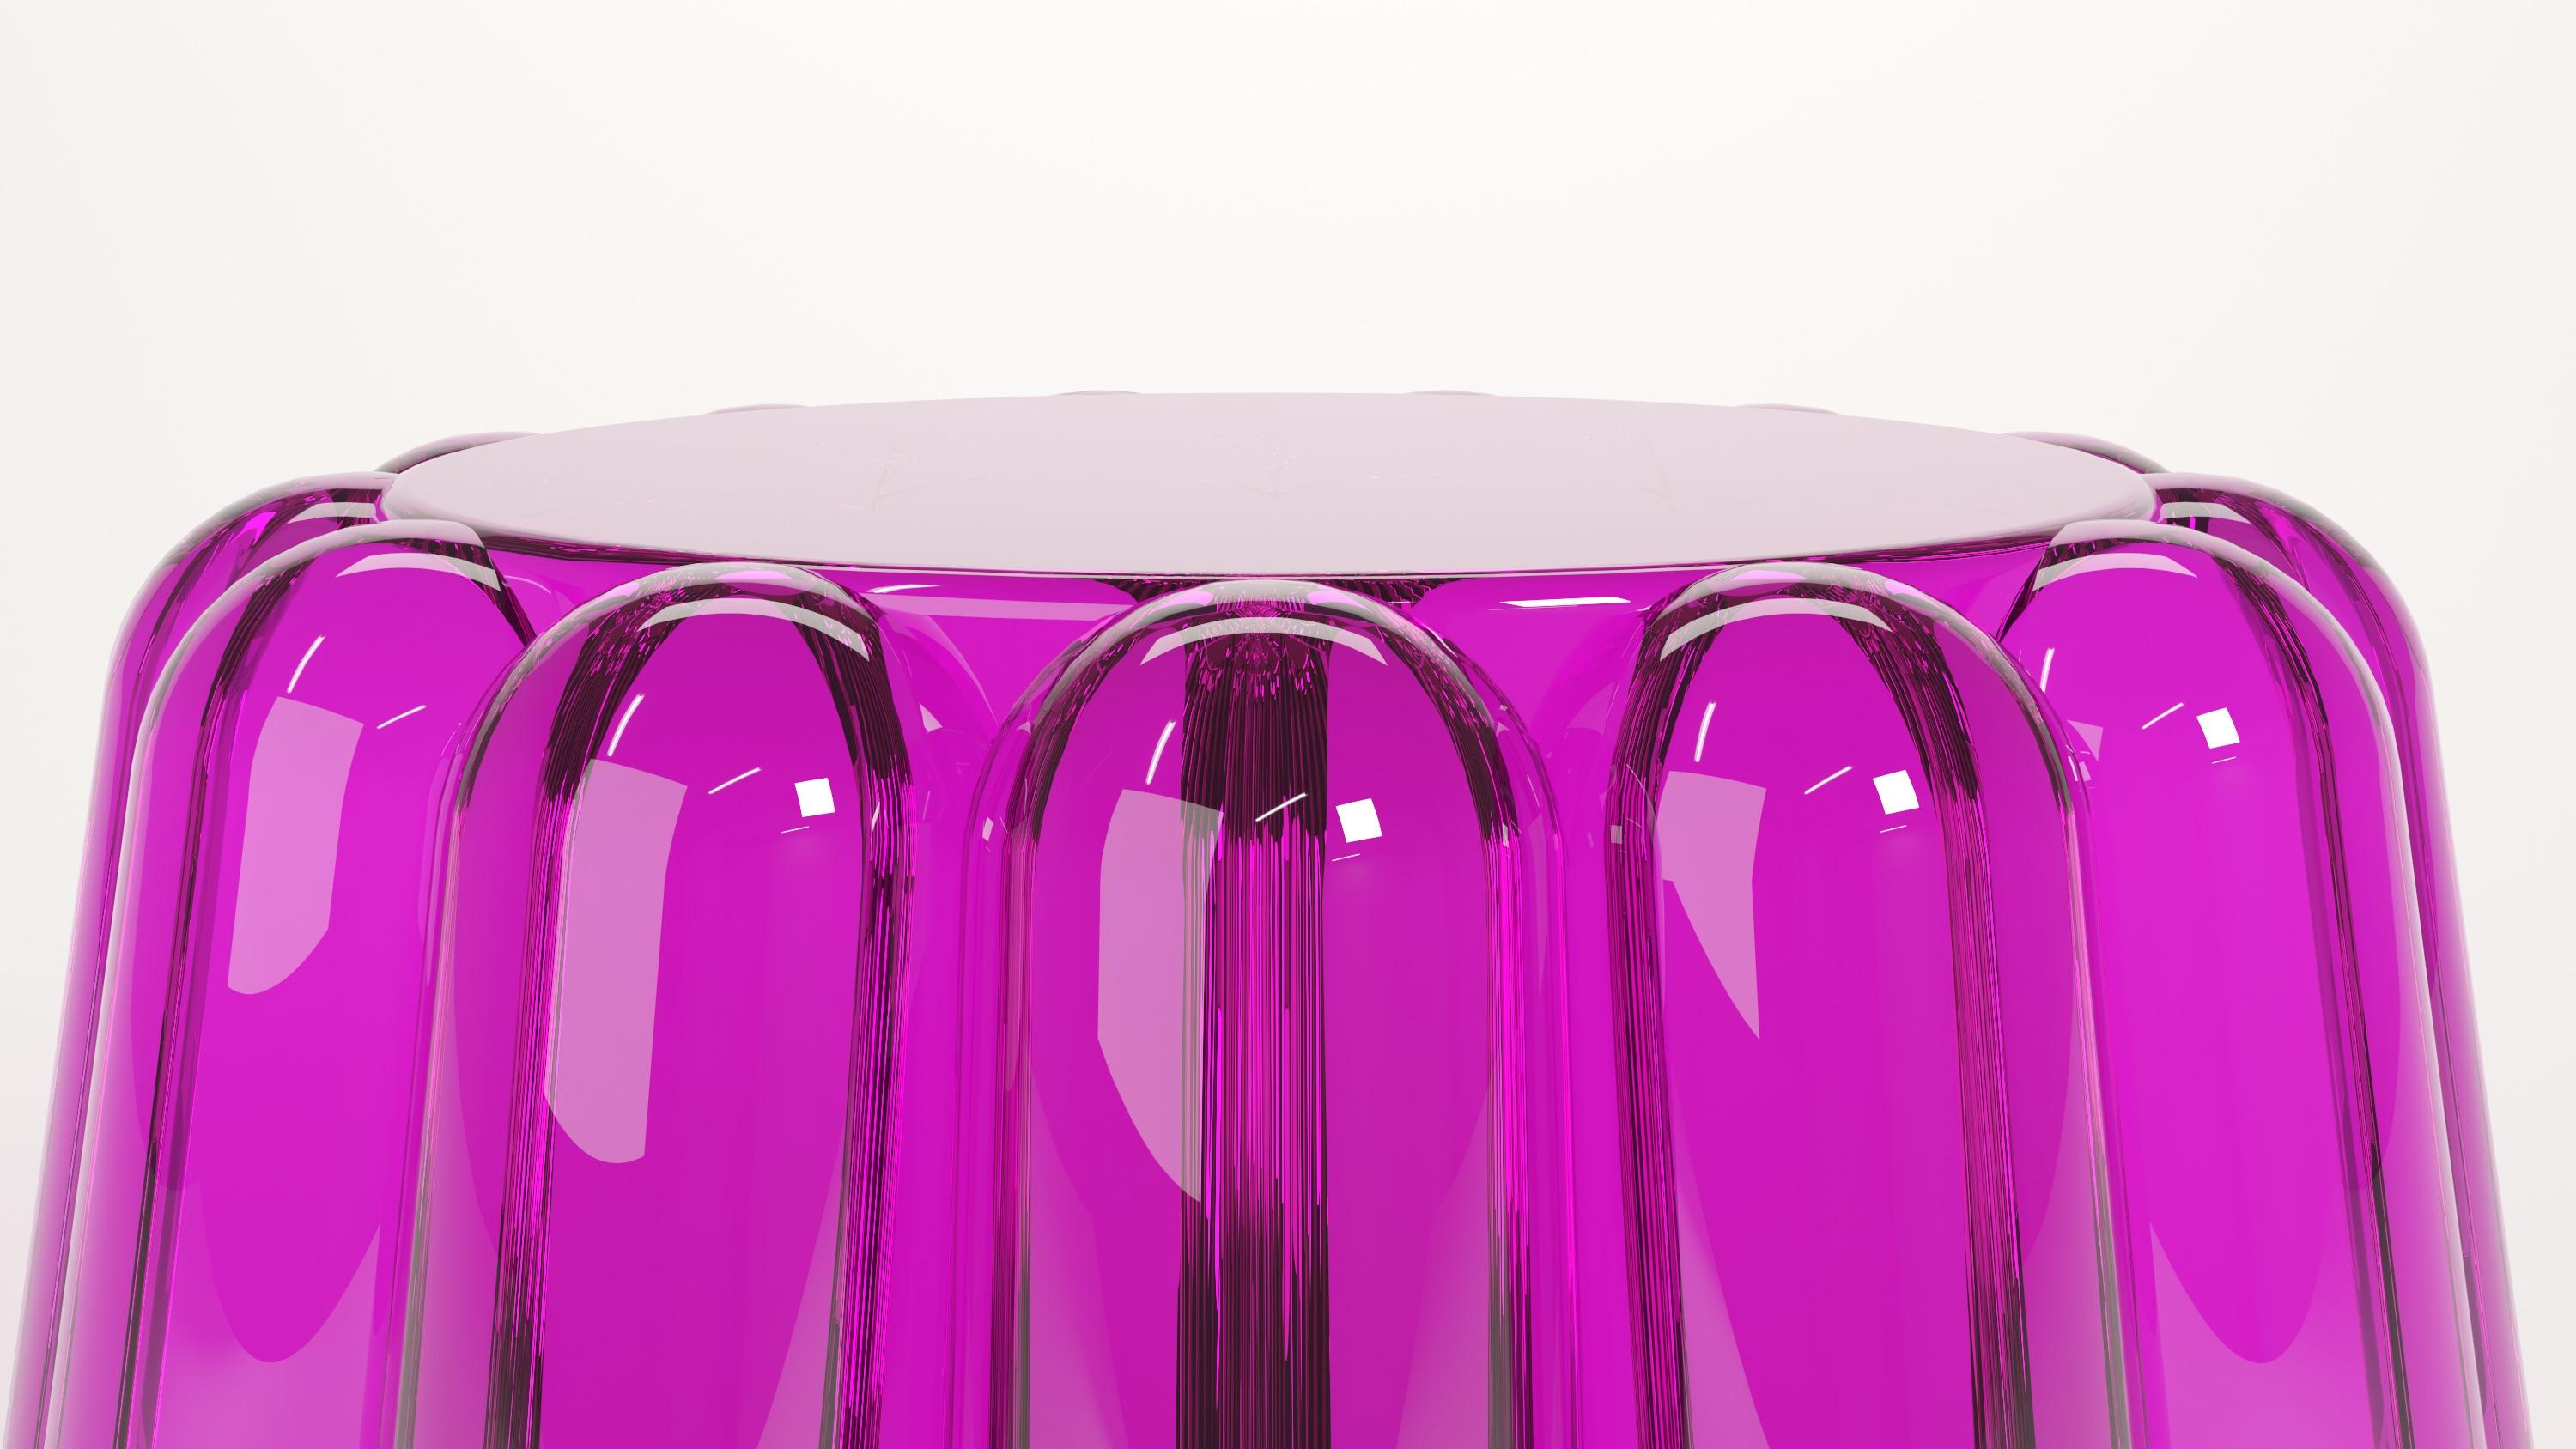 Couchtisch aus farbigem Plexiglas, Modell Fluffy, aus der Collection'S Candy, entworfen von Studio Superego in Zusammenarbeit mit Concetta Lorenzo für Superego Editions,  im Jahr 2021.
Collection'S ist inspiriert von der farbenfrohen und weichen